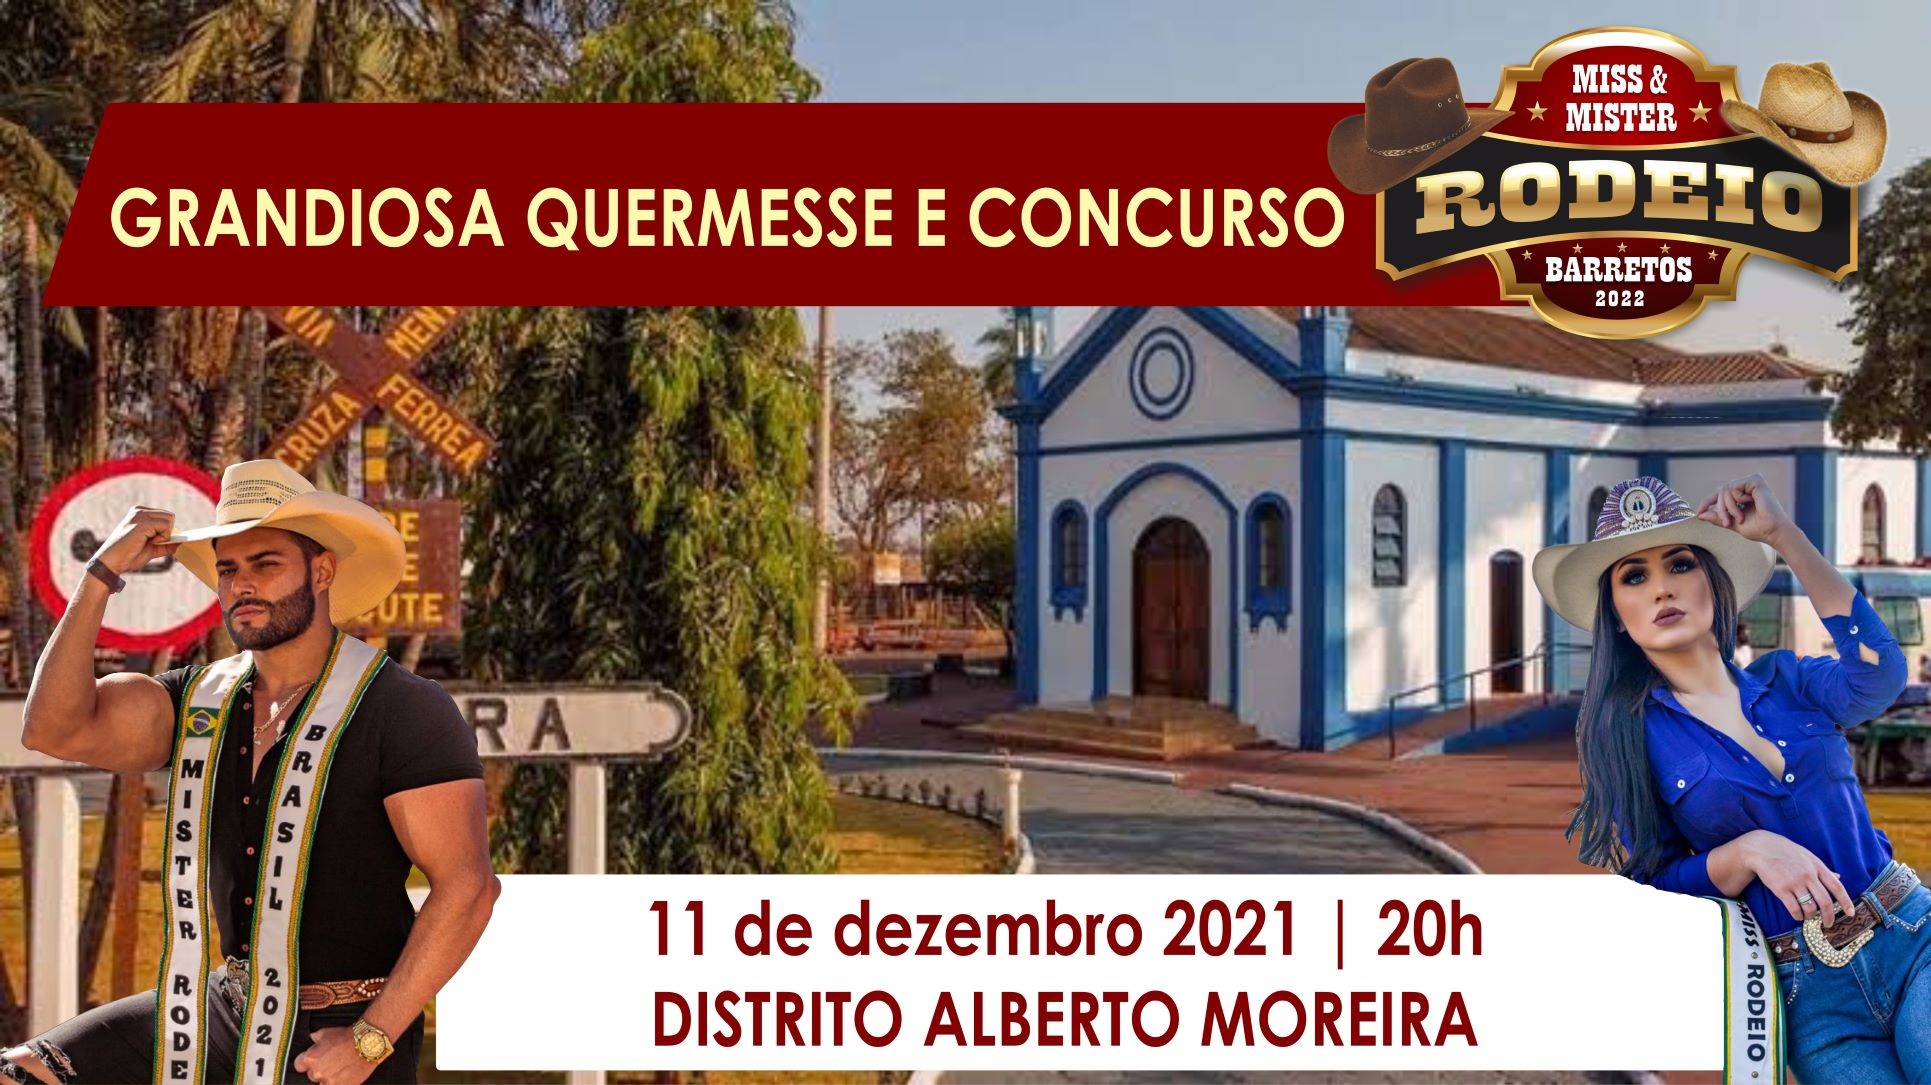 Miss & Mister Rodeio Barretos 2022 serão eleitos durante grandiosa quermesse em Alberto Moreira no dia 11 de dezembro